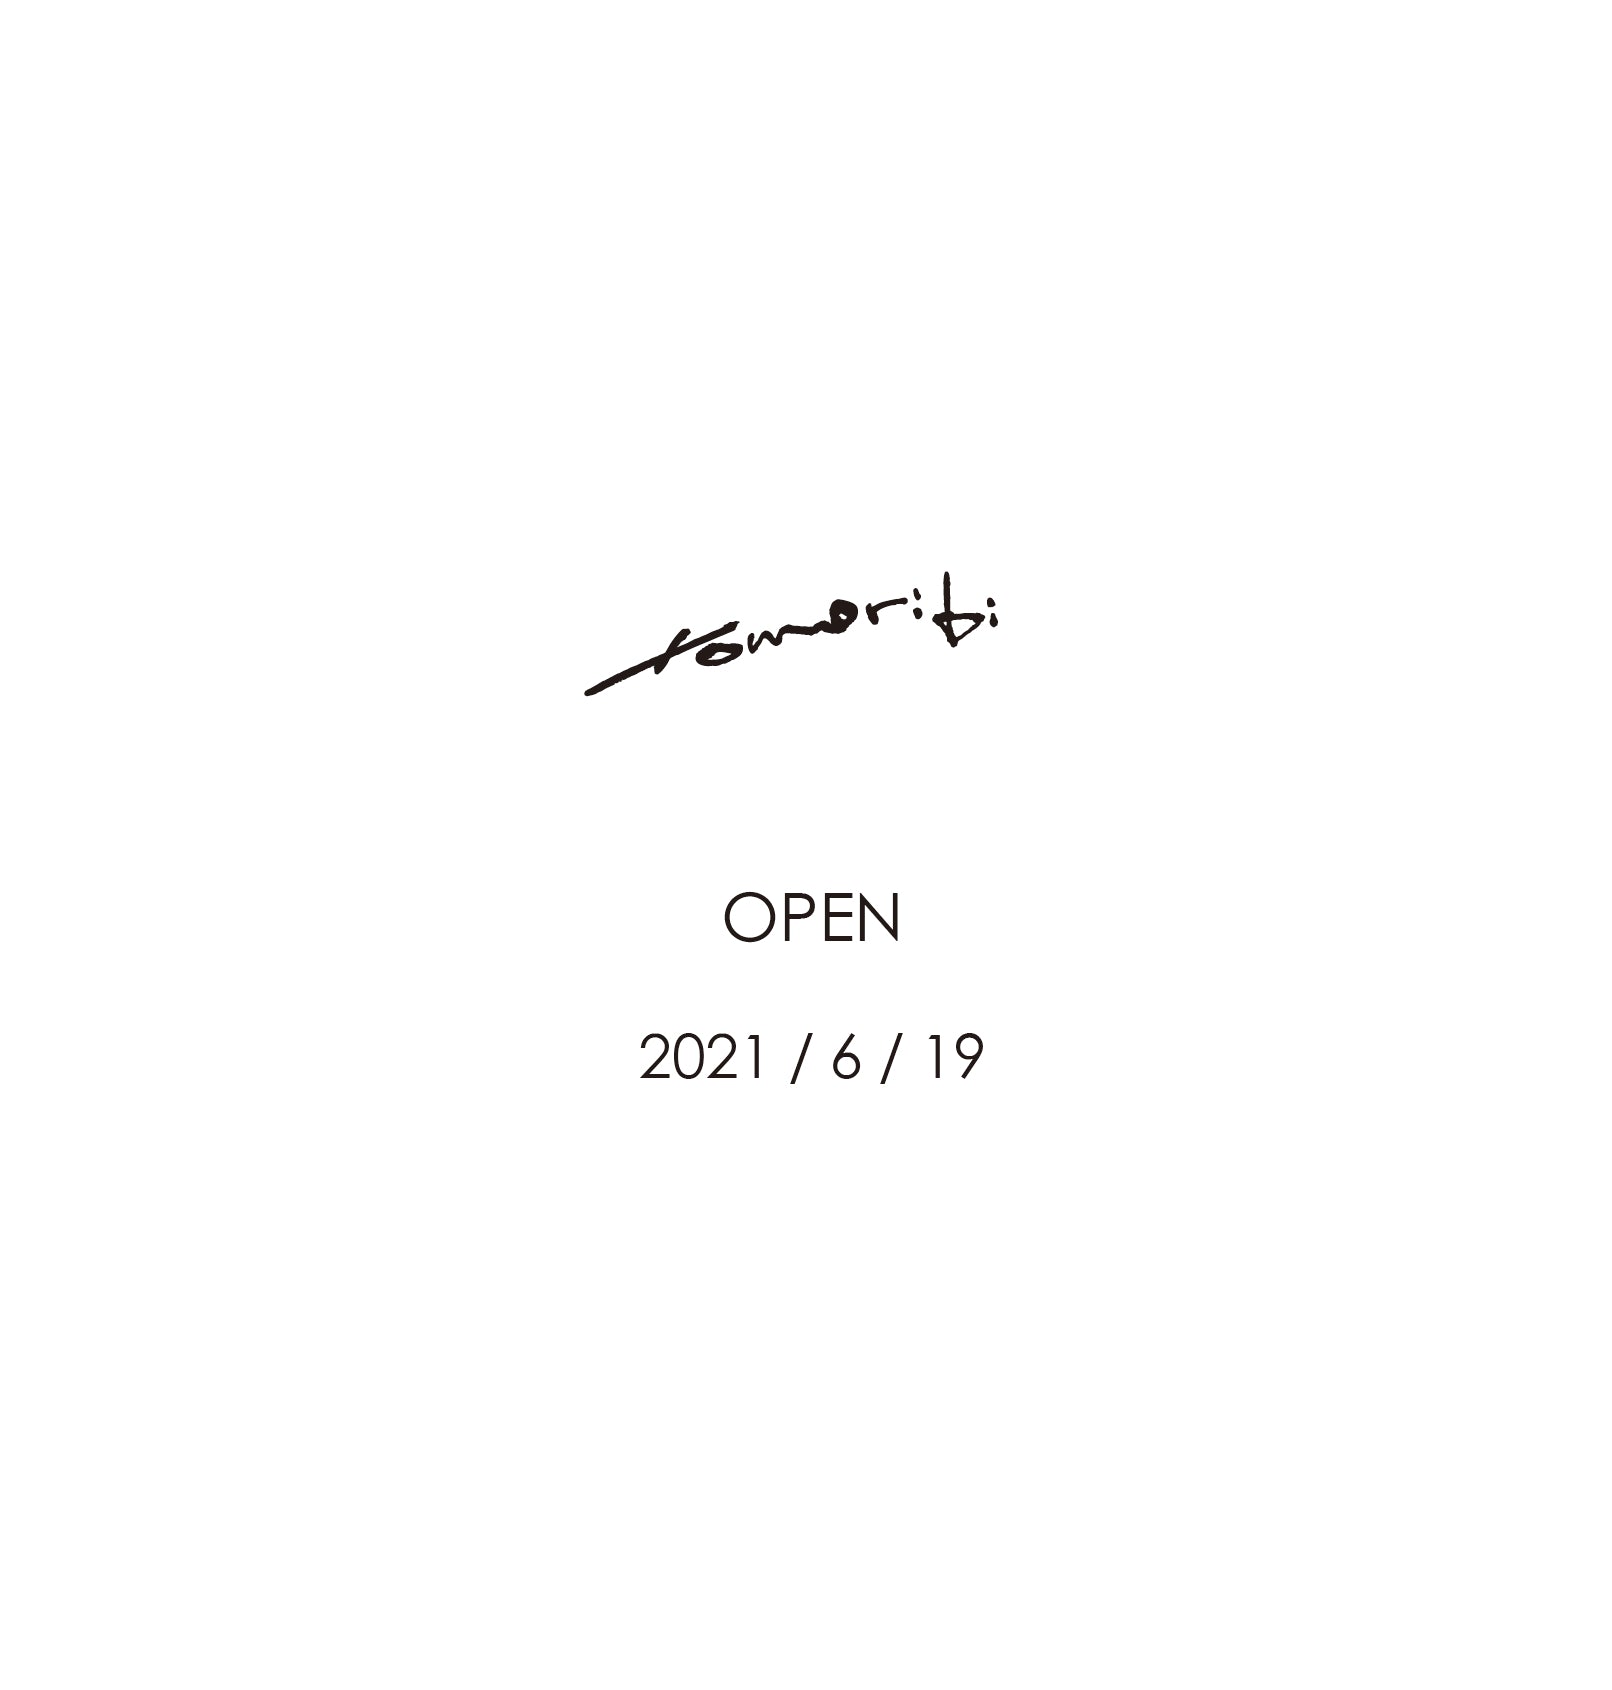 New shop "tomoribi" open